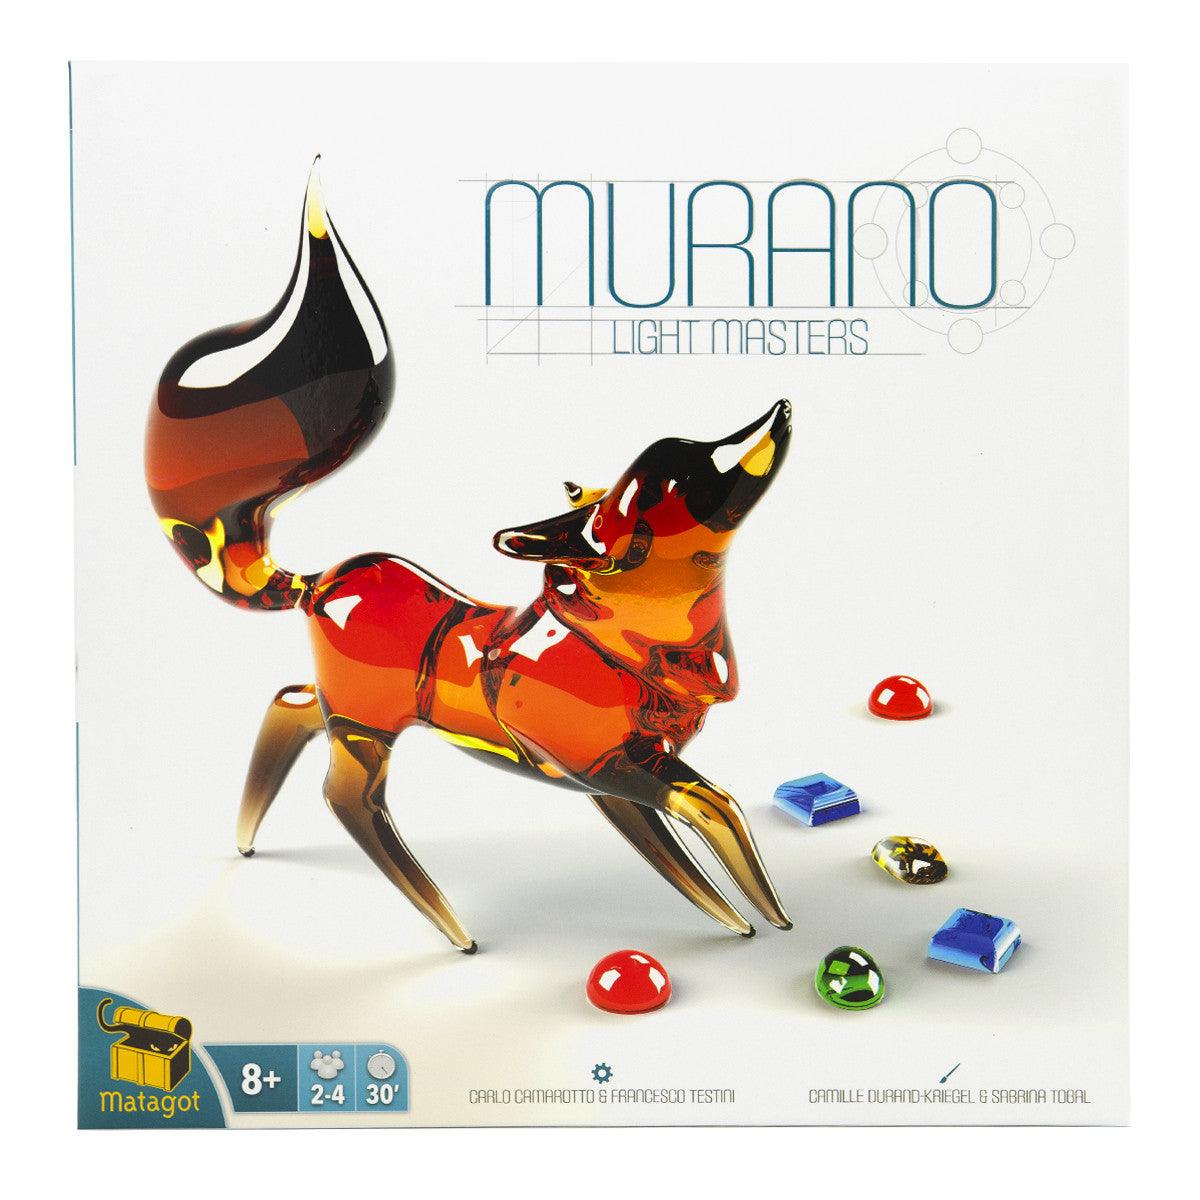 VR-83410 Murano Light Masters - Matagot - Titan Pop Culture